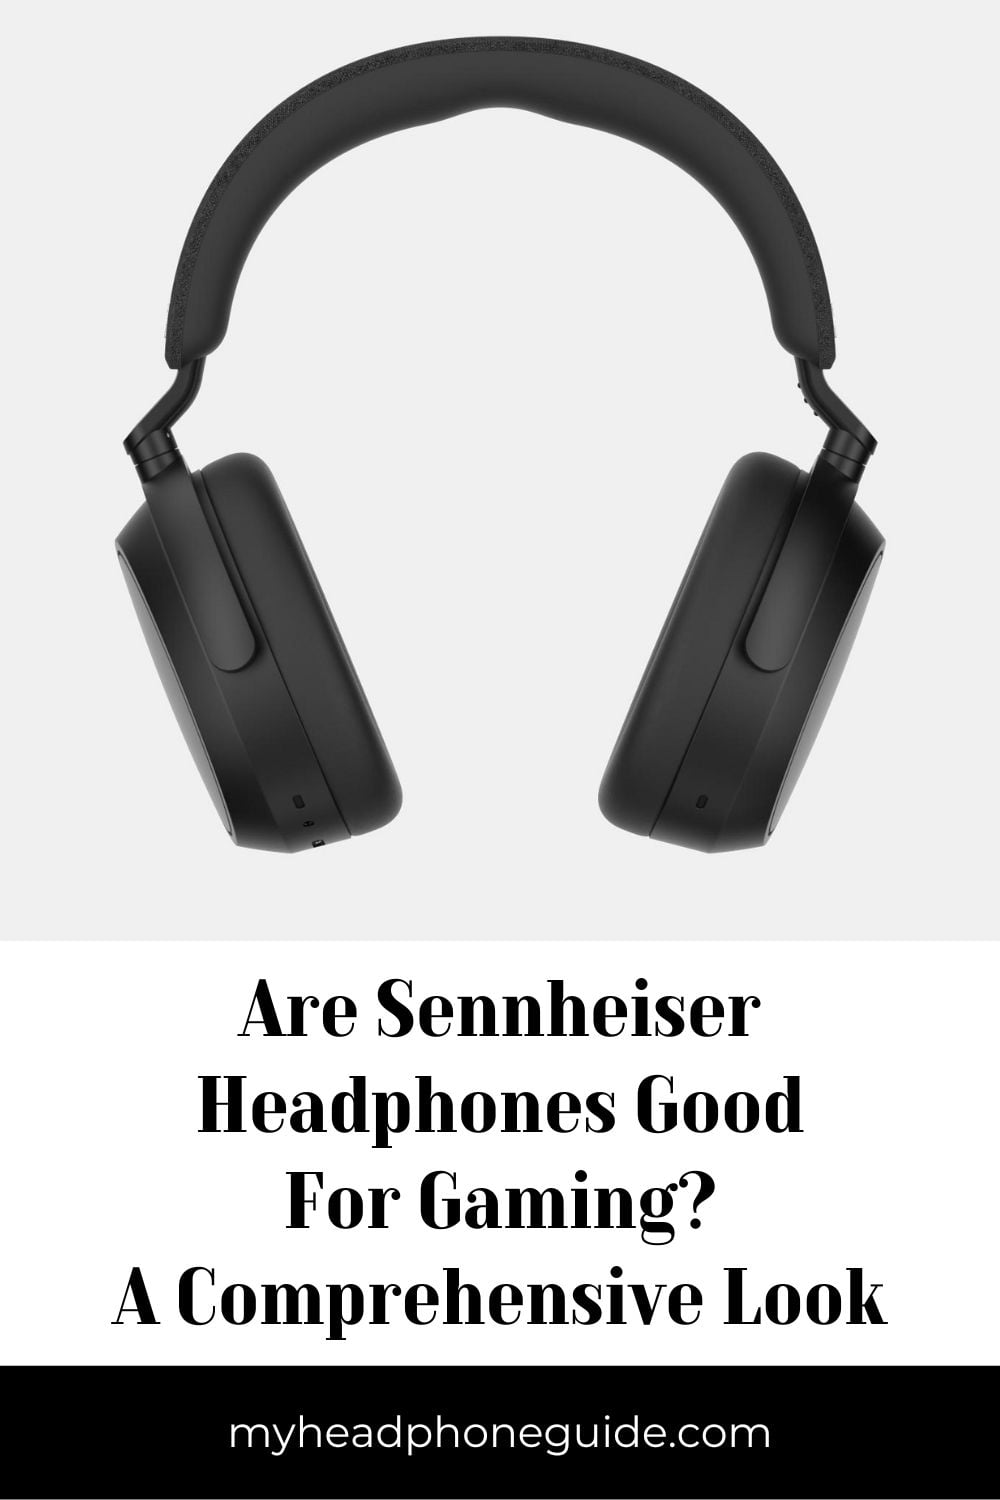 Are Sennheiser Headphones Good for Gaming?